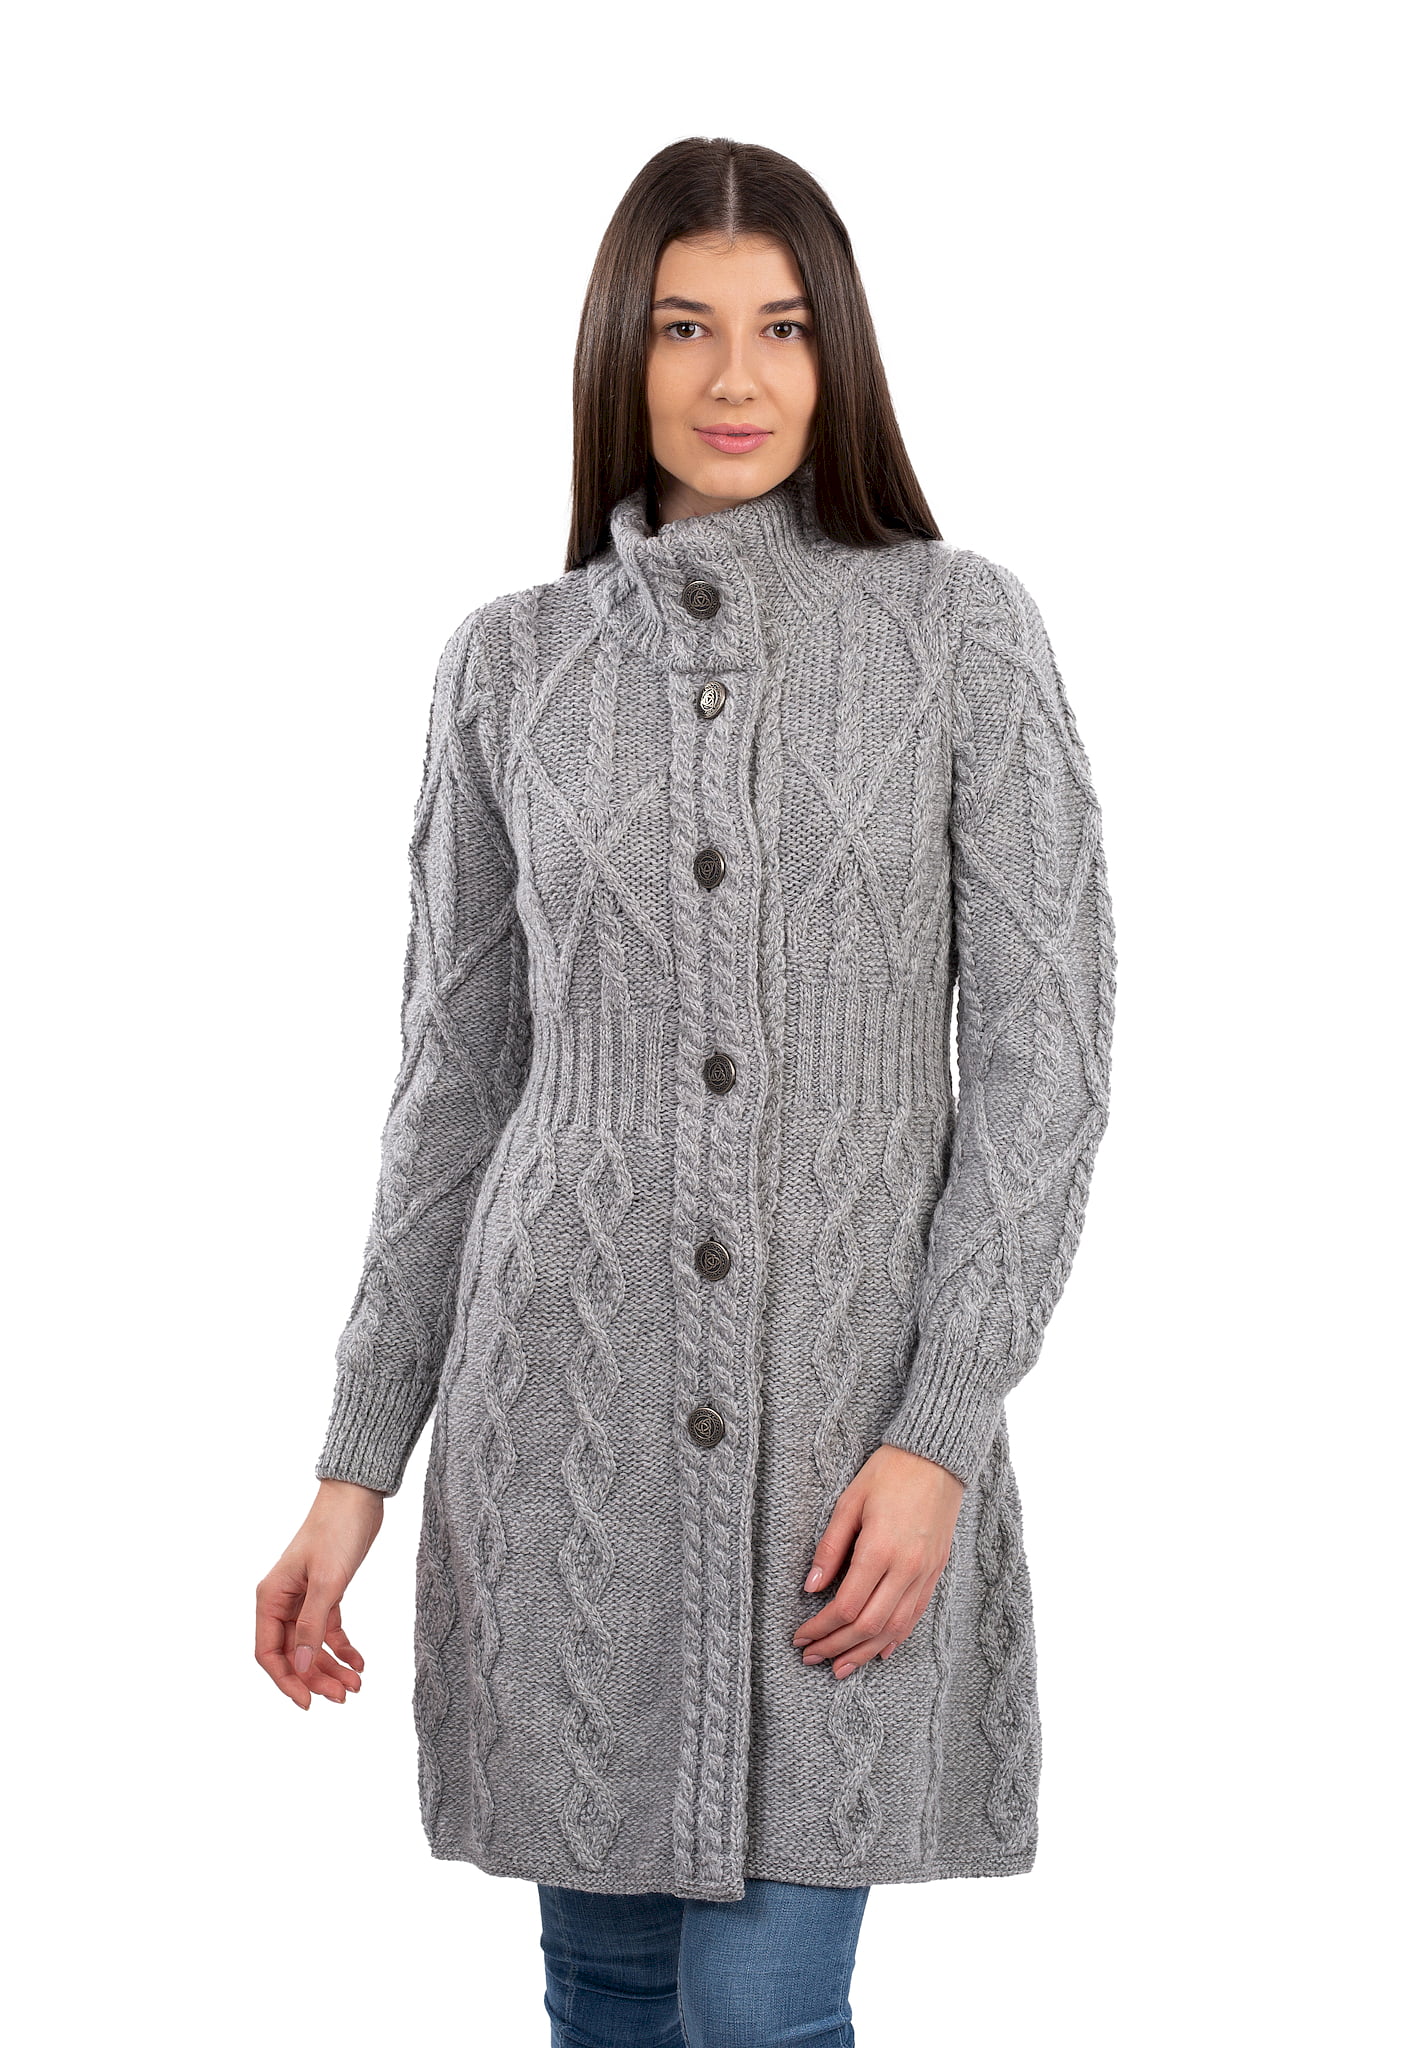 SAOL - SAOL Irish Cardigan Sweater for Women's 100% Merino Wool Aran